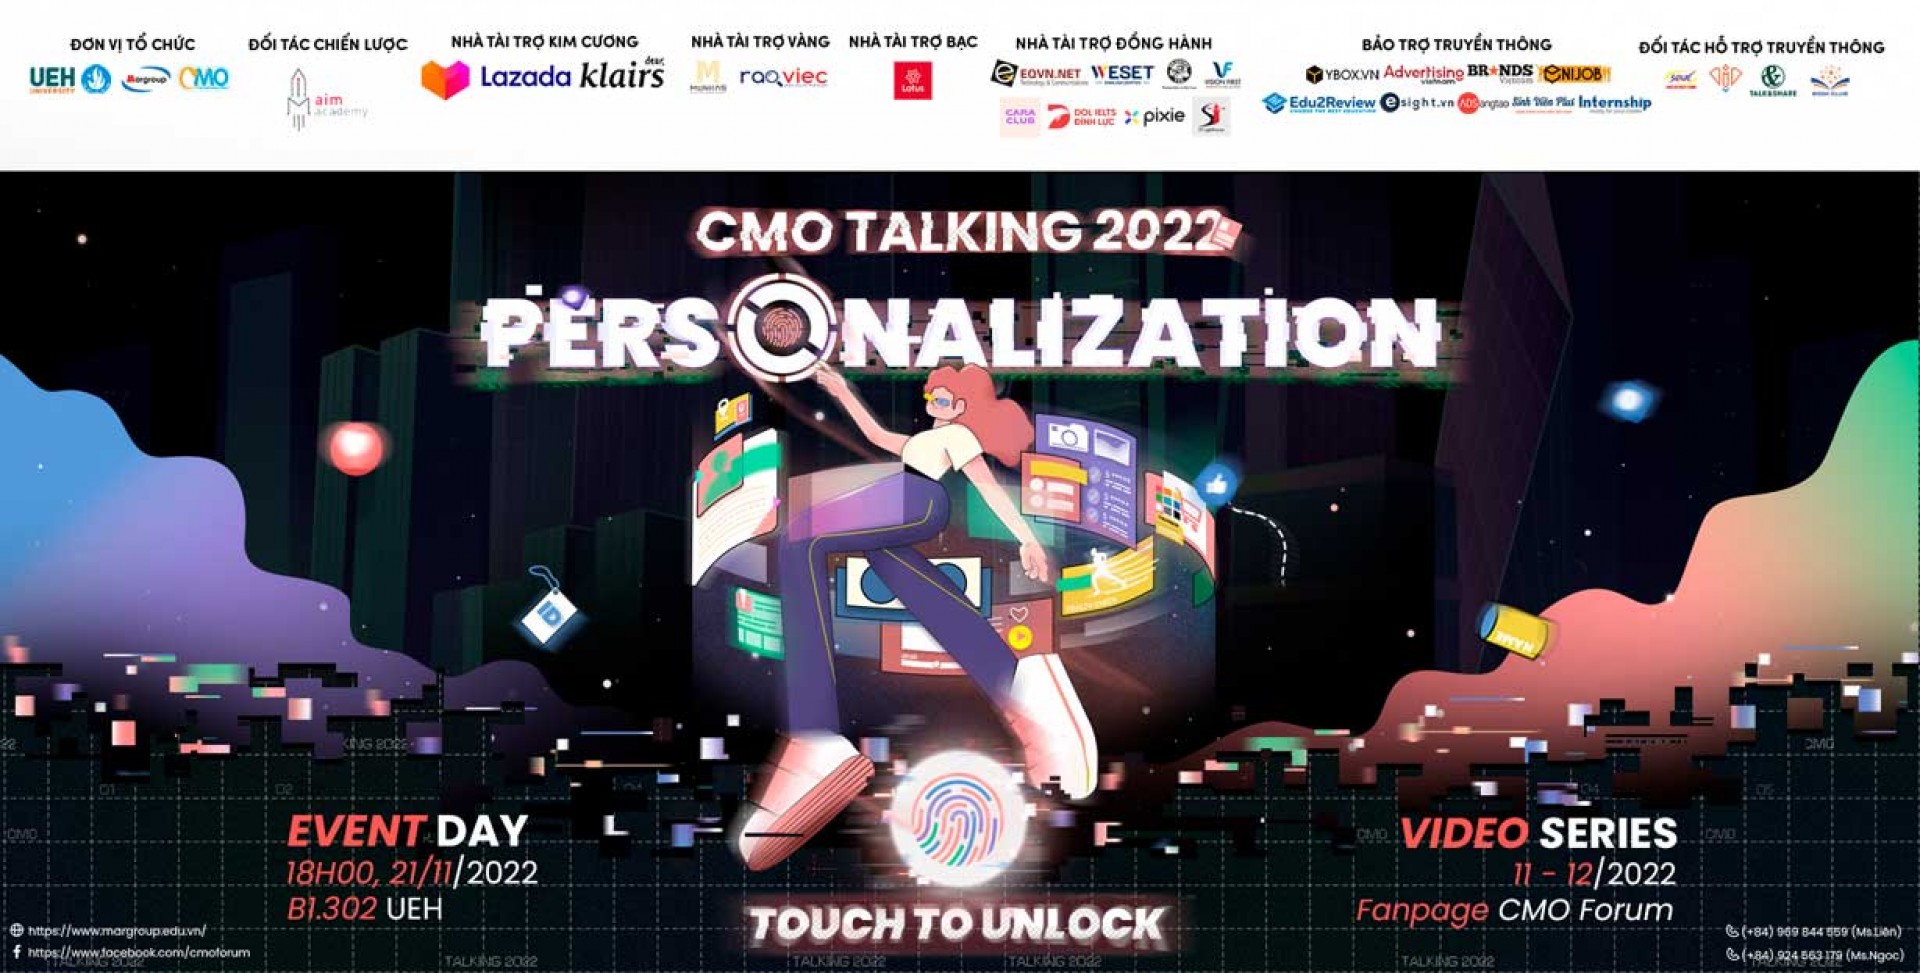 CMO TALKING 2022 CHÍNH THỨC TRỞ LẠI VỚI CHỦ ĐỀ PERSONALIZATION - TOUCH TO UNLOCK